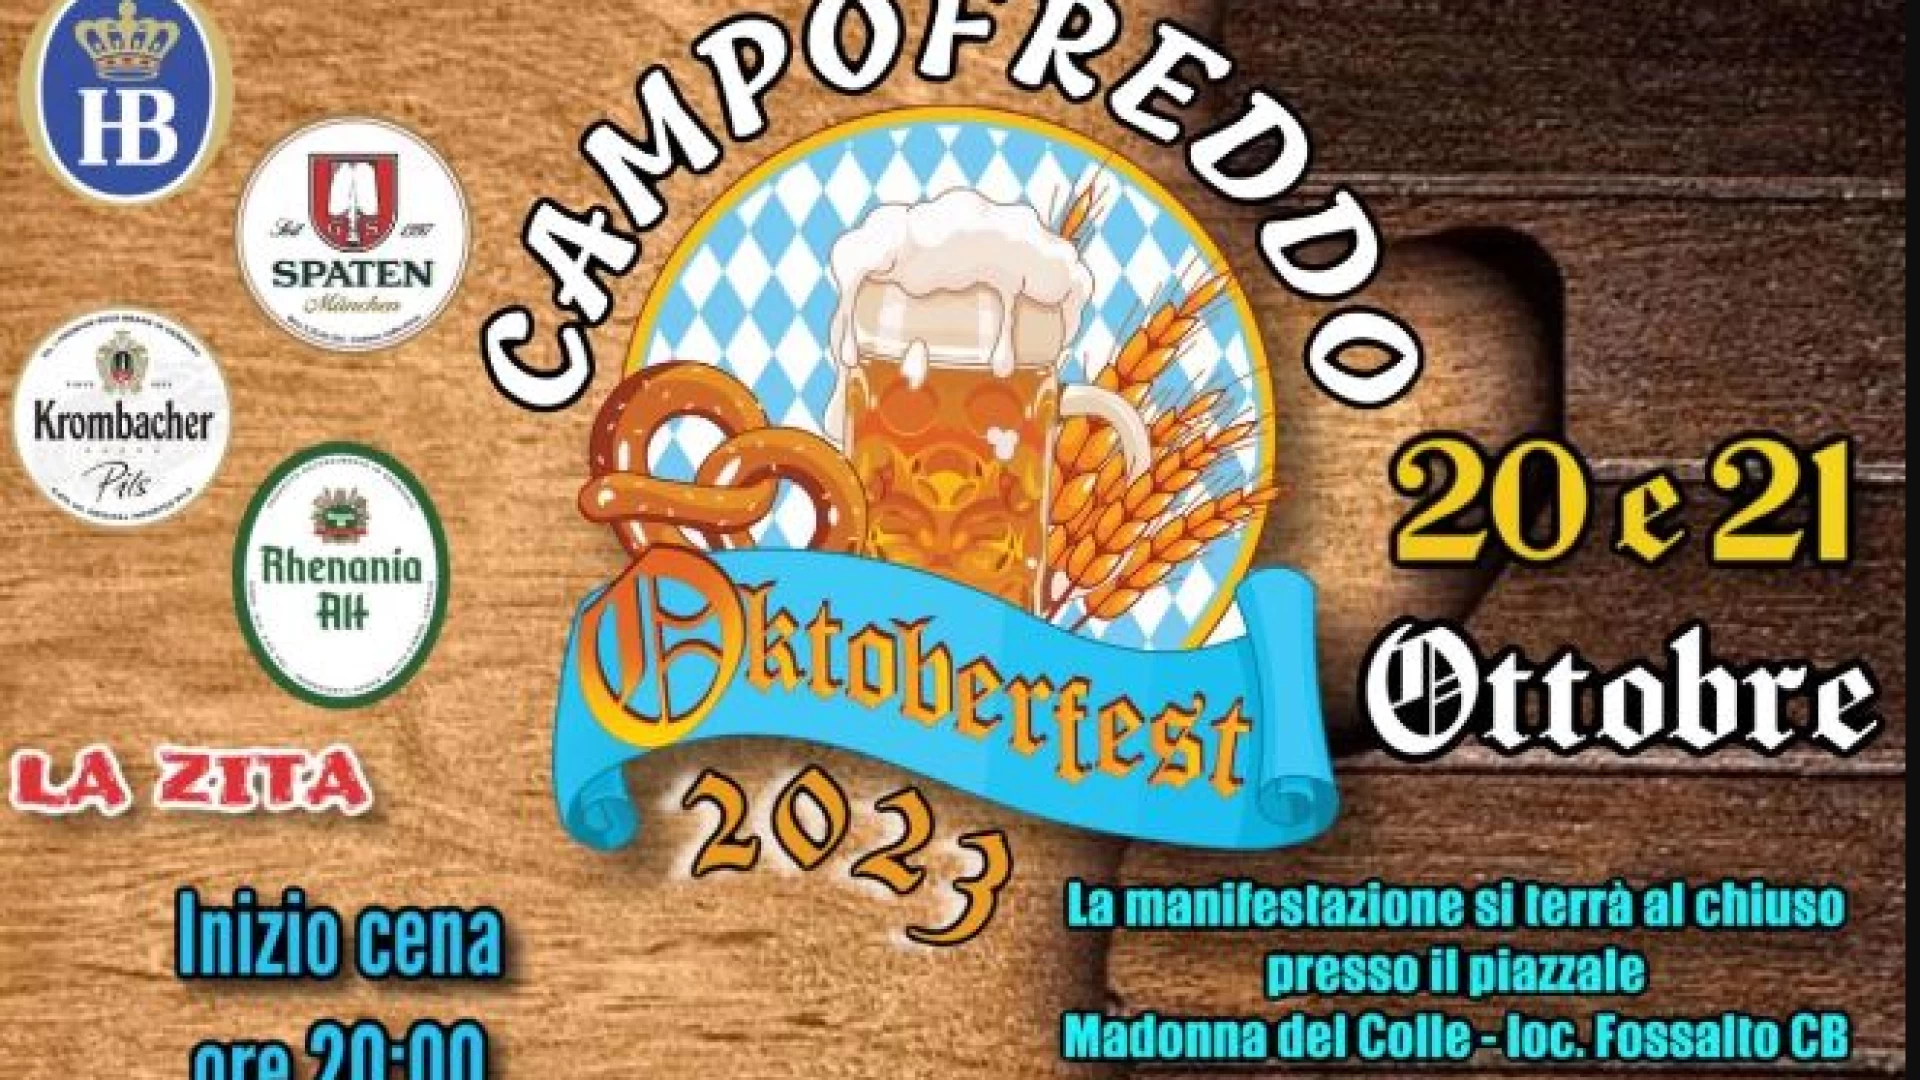 Fossalto: il 20 e 21 ottobre il Campofreddo Oktoberfest. L’edizione 2023 ricca di novità L’evento si svolgerà in struttura al coperto presso il piazzale Madonna del Colle.